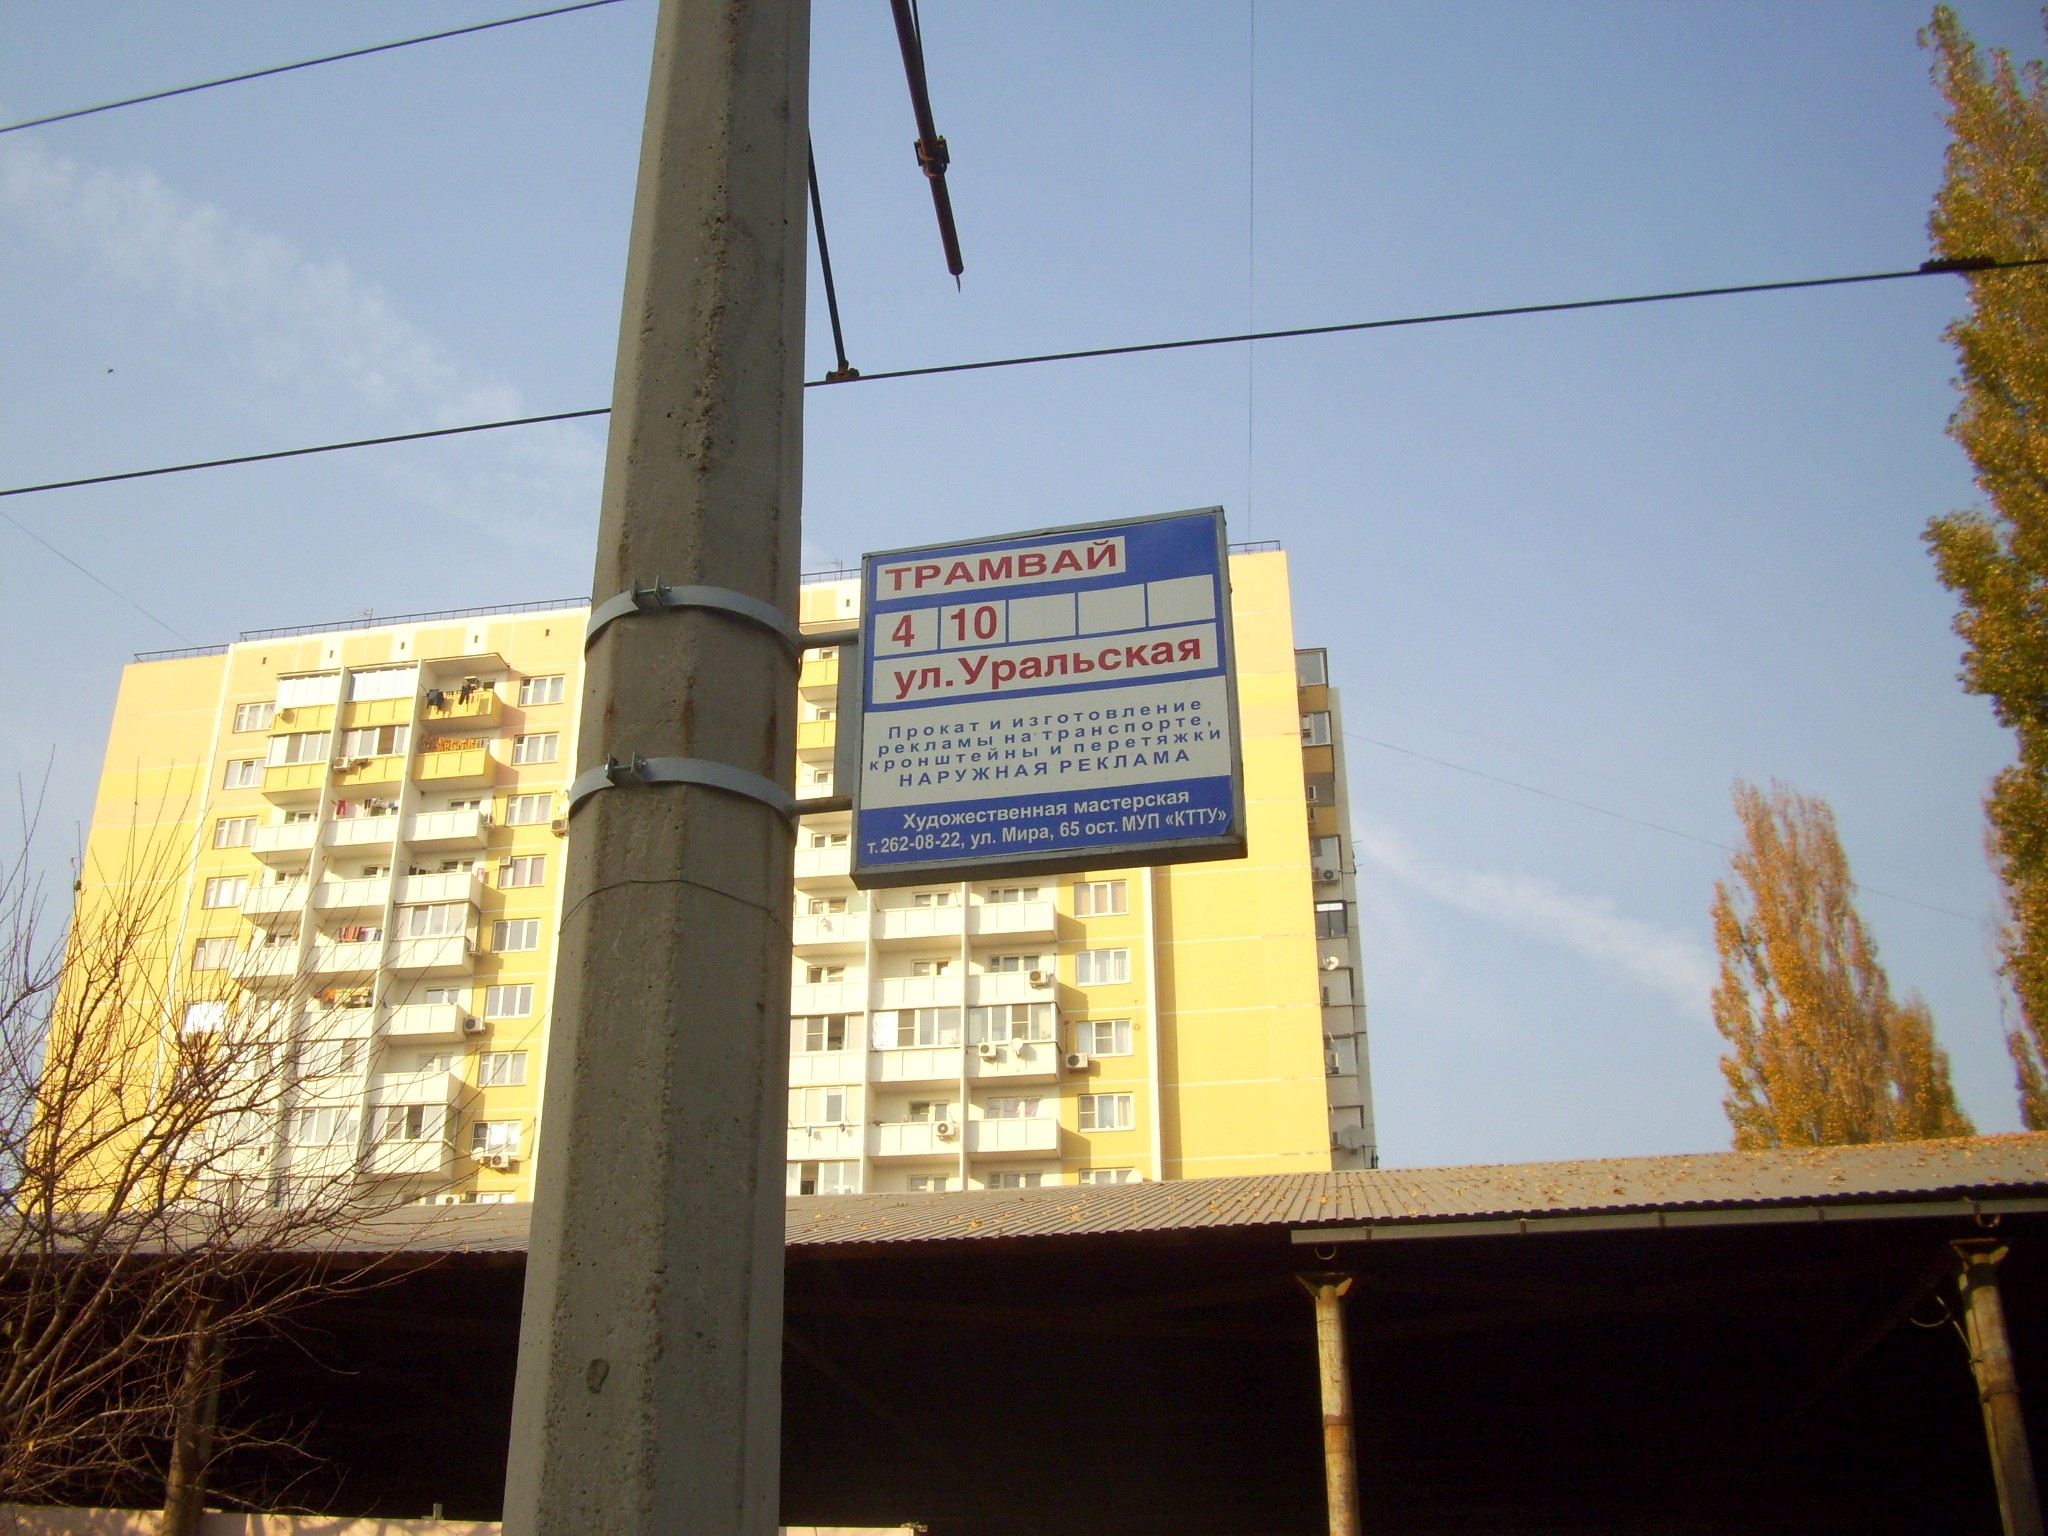 Краснодарский трамвай  —  фотографии, сделанные в 2010 году (часть 2)